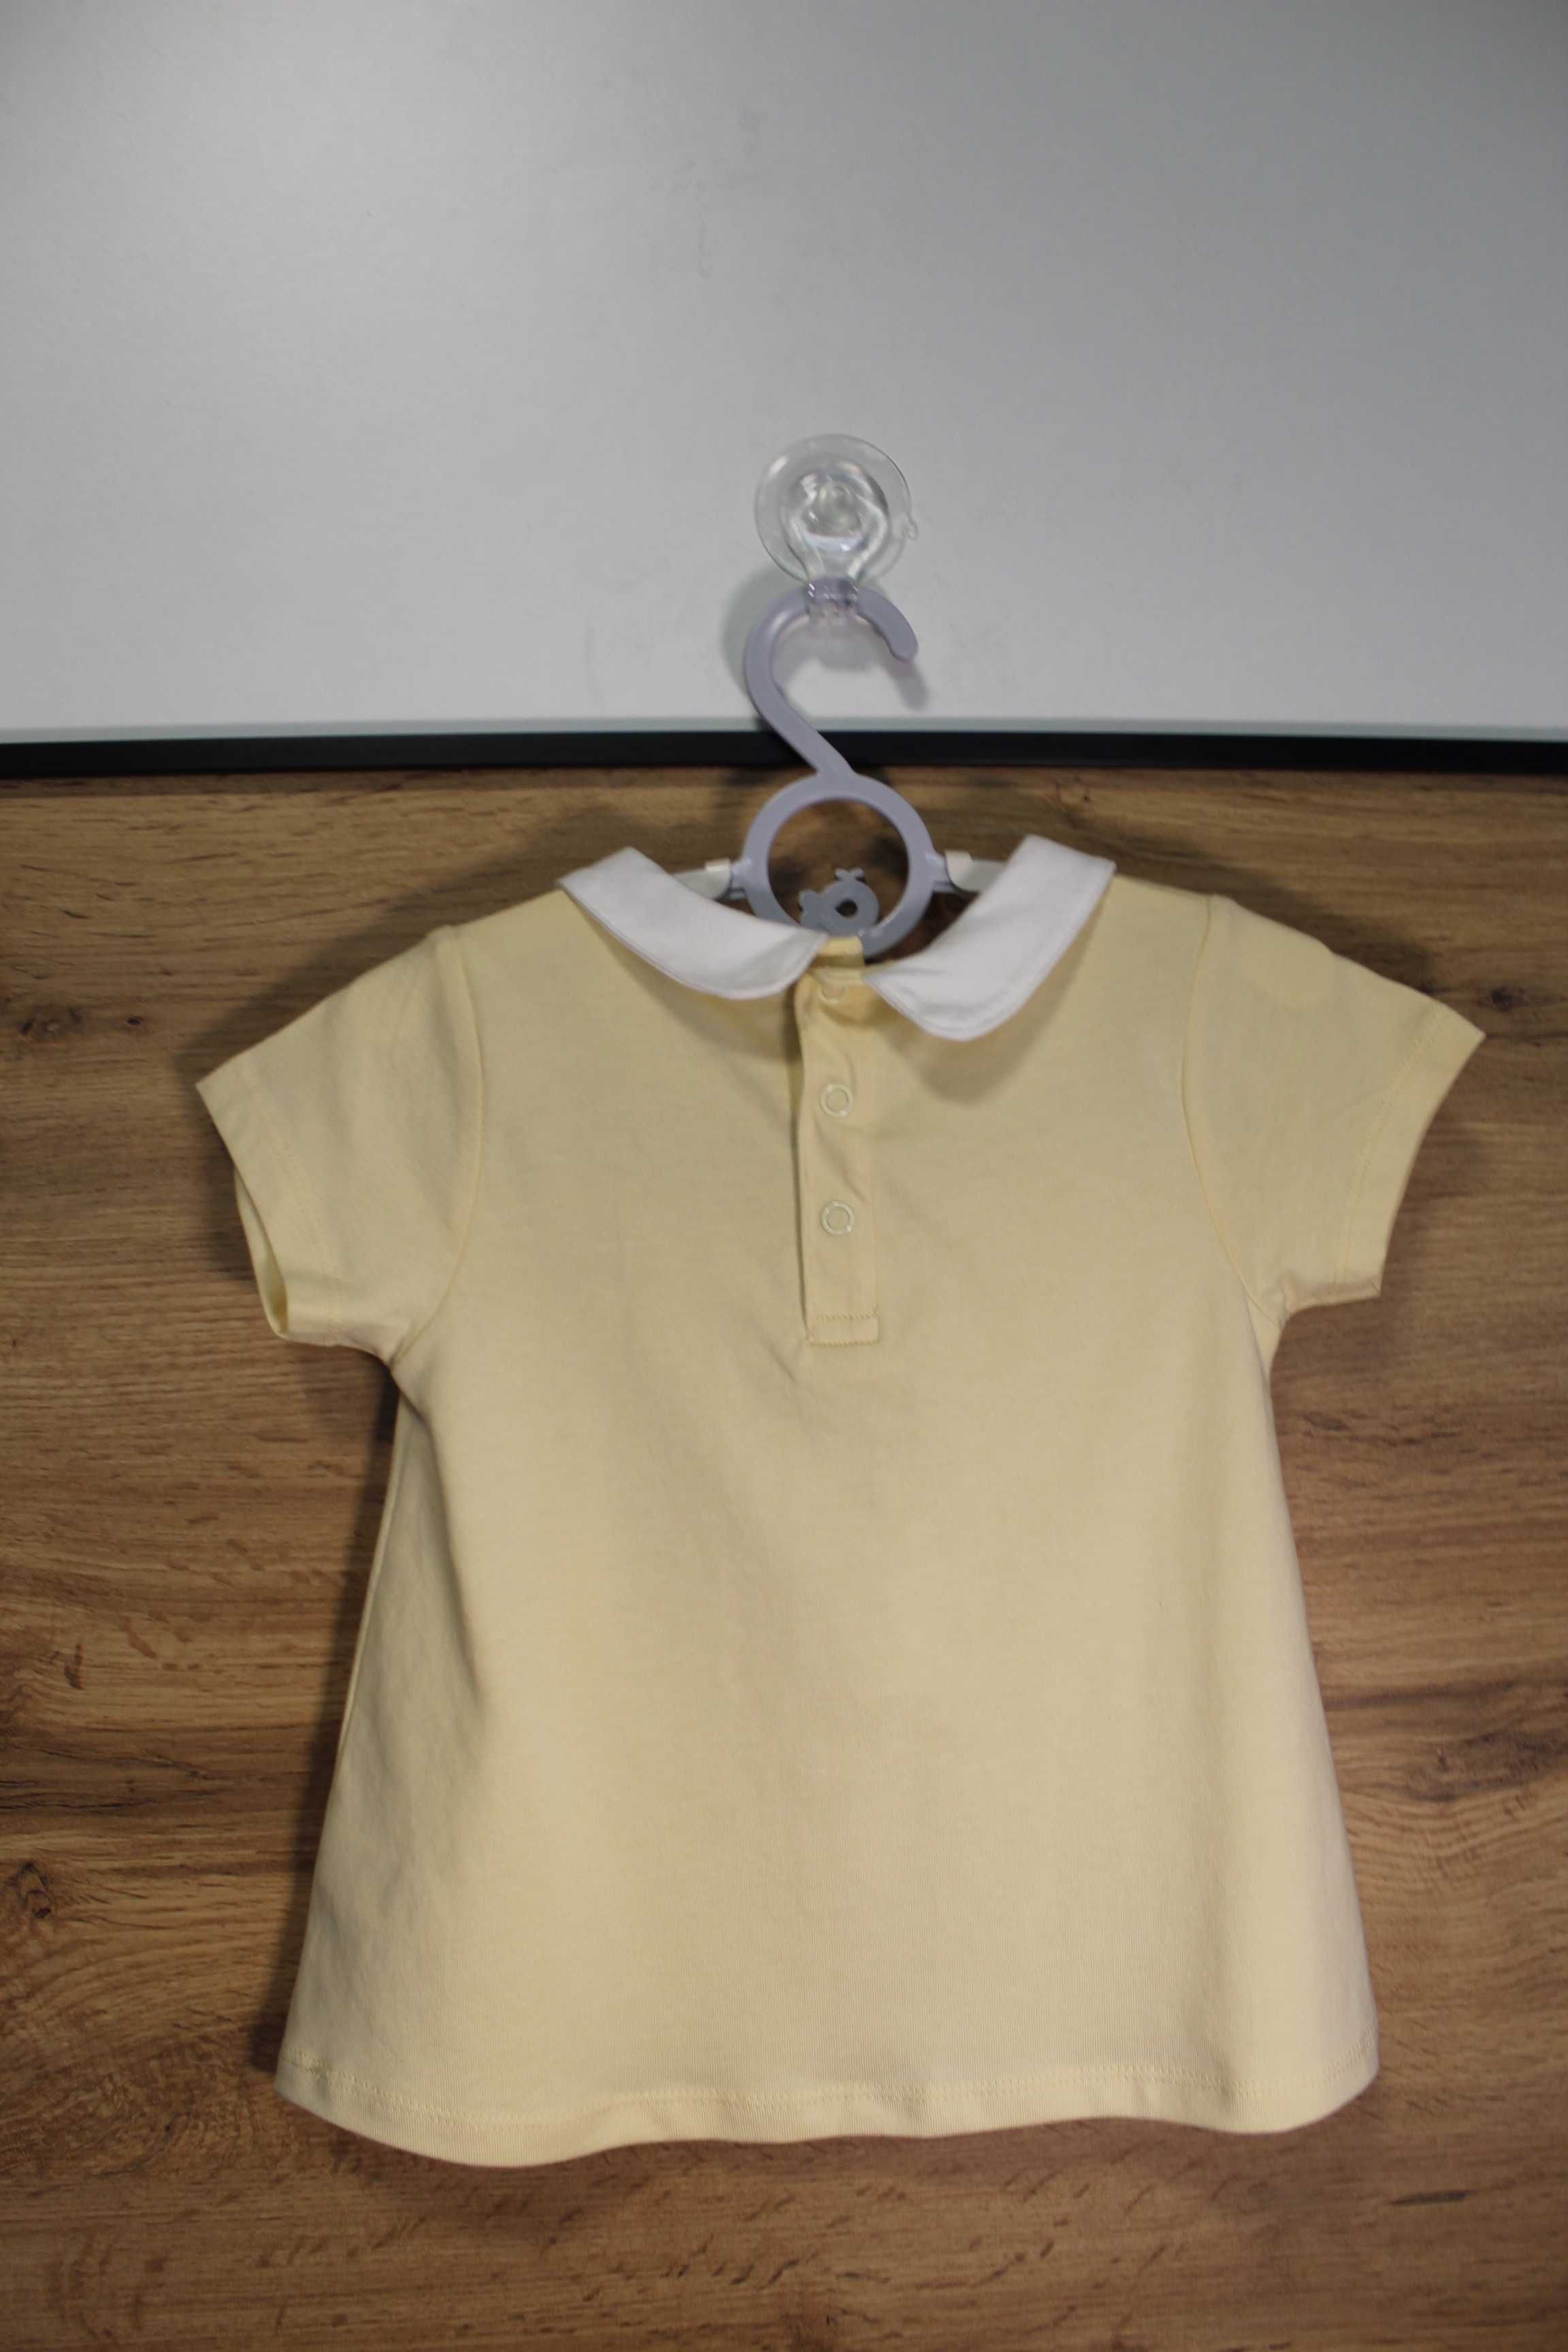 Жовта туніка футболка з білим комірцем TU, для віку 1-2 року, акція